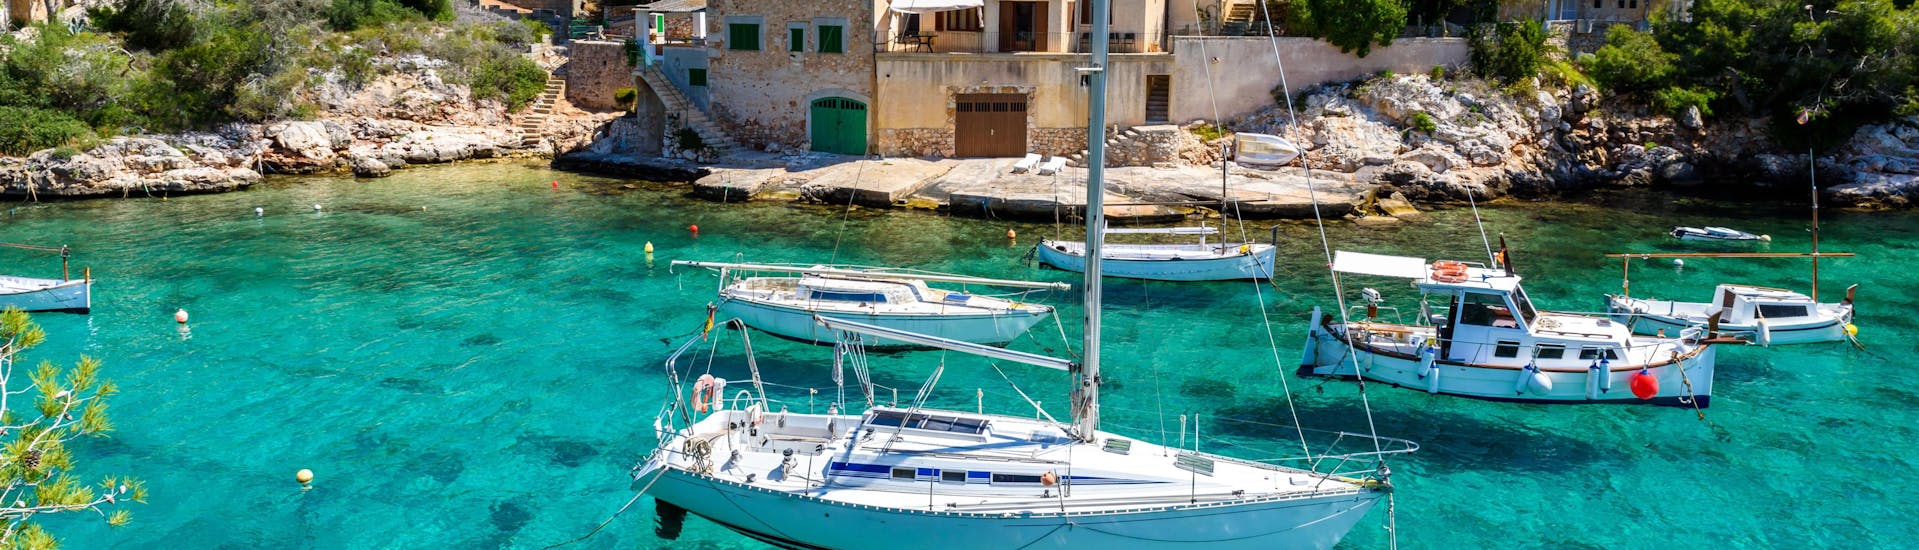 Una imagen de la pintoresca Cala Figuera, uno de los muchos lugares que se pueden visitar en un paseo en barco en Mallorca.